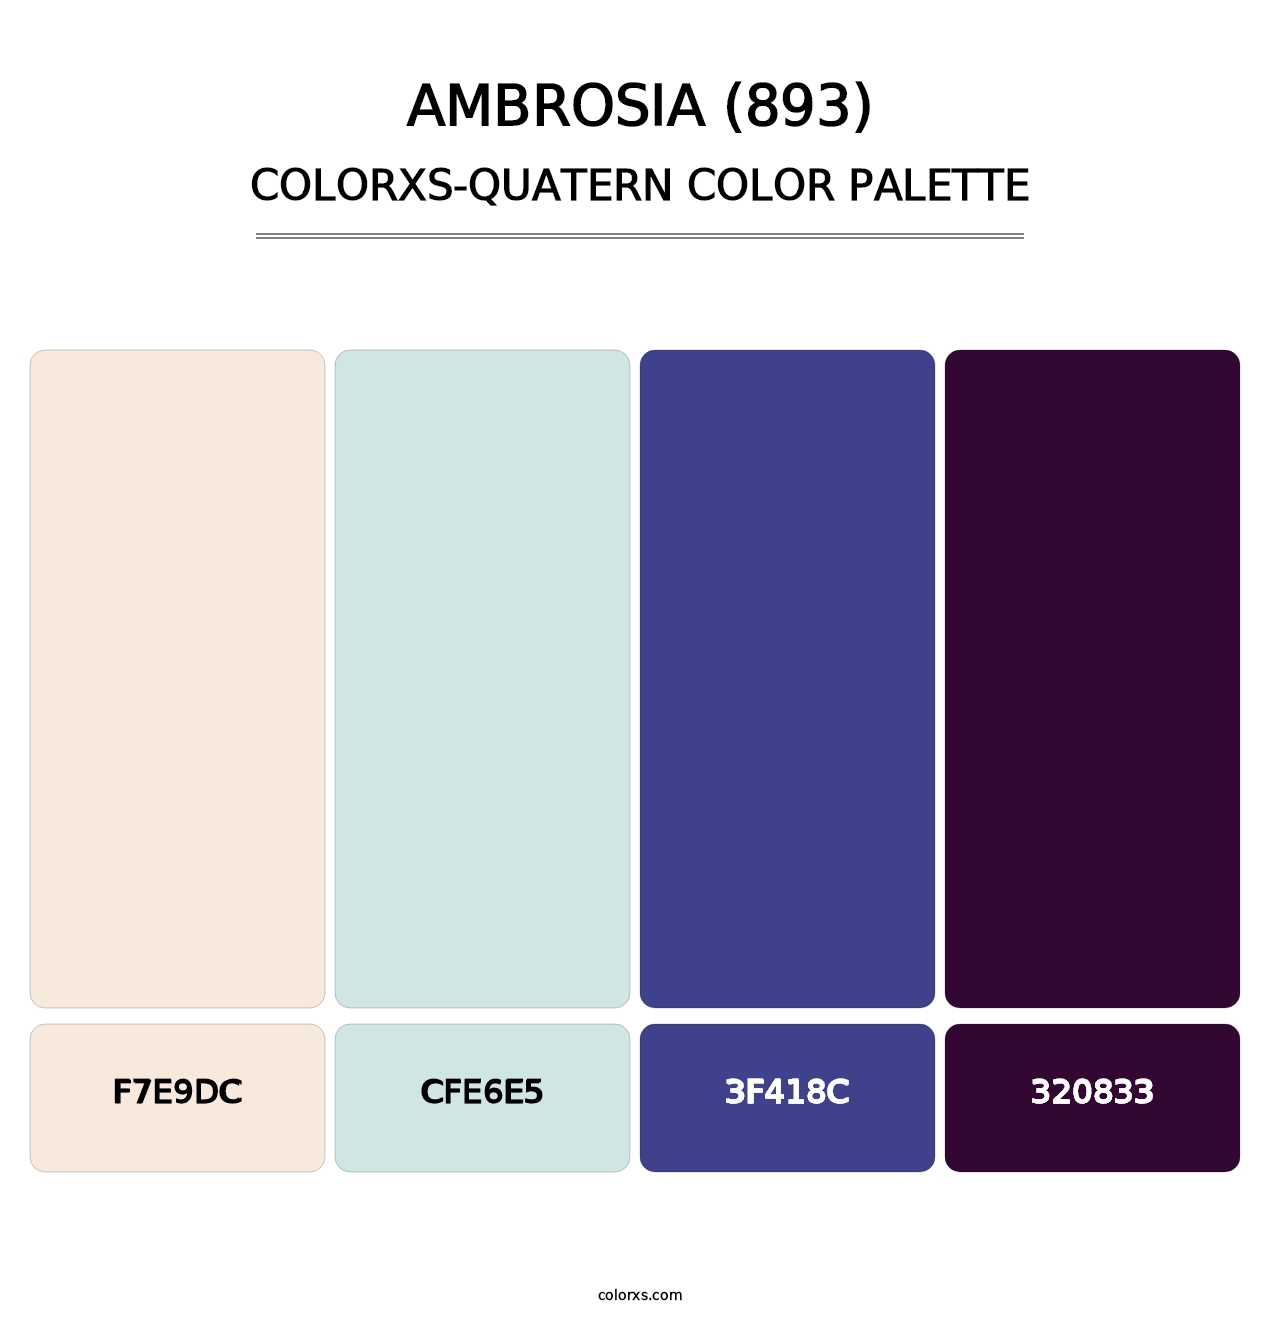 Ambrosia (893) - Colorxs Quatern Palette